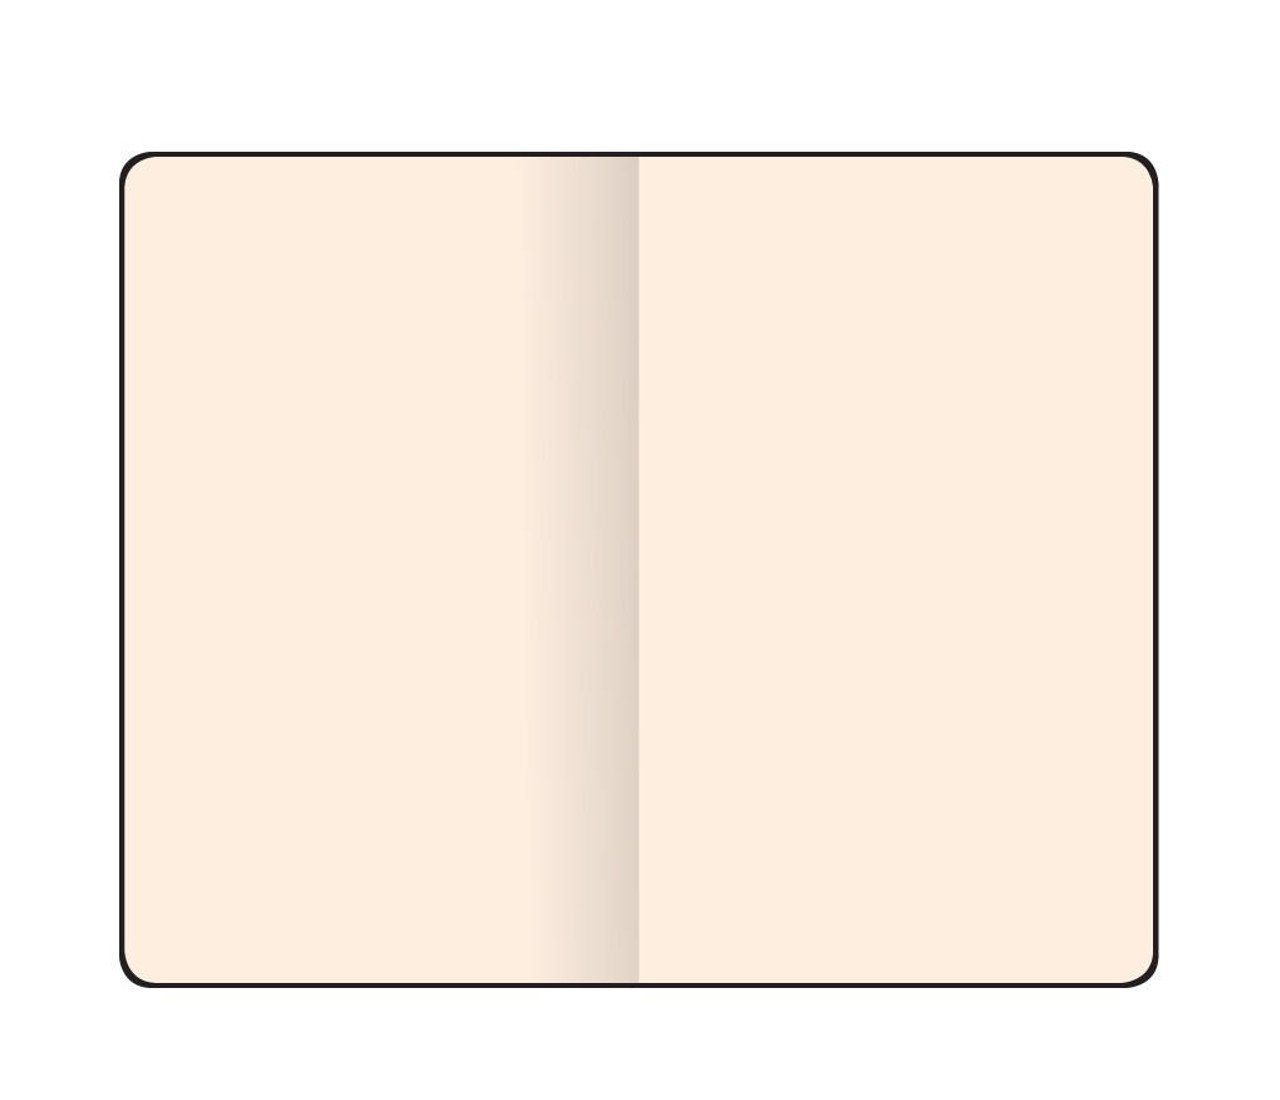 96 Global Seiten Skizzenbuch Notizbuch 15,5x21,5cm Papier / 170g Flexbook Schwarz Flex Sketchbook Munken Blanko